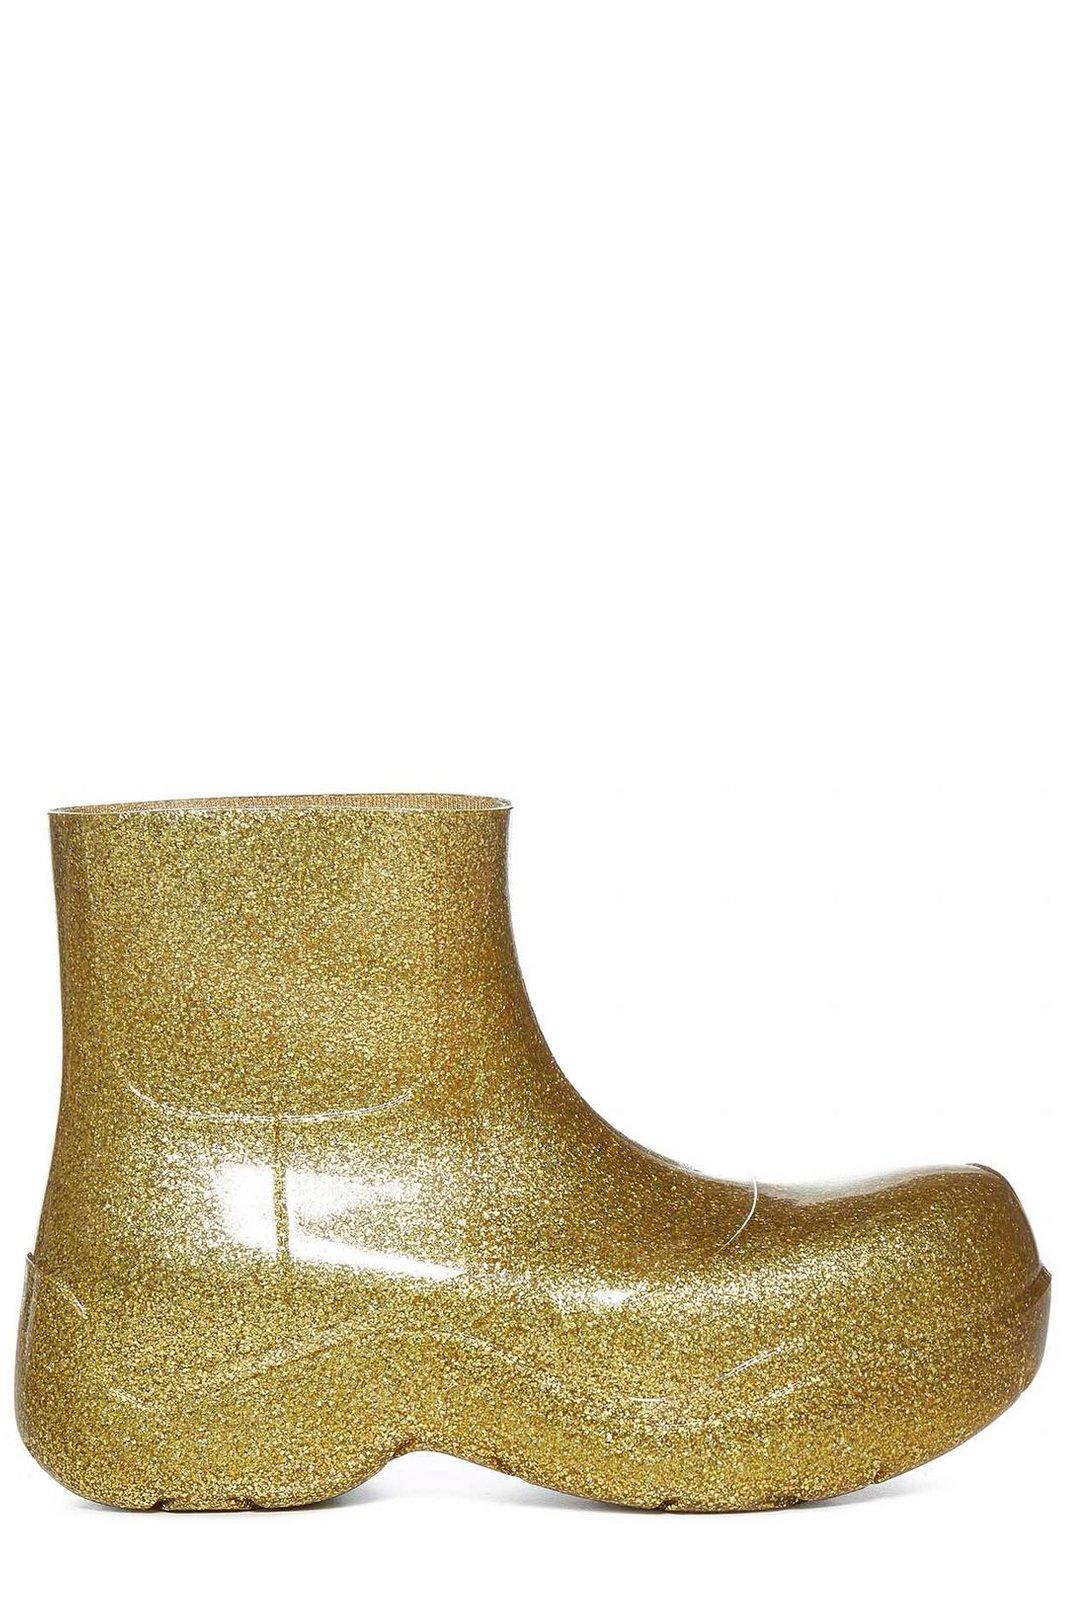 Bottega Veneta Glittered Ankle Boots